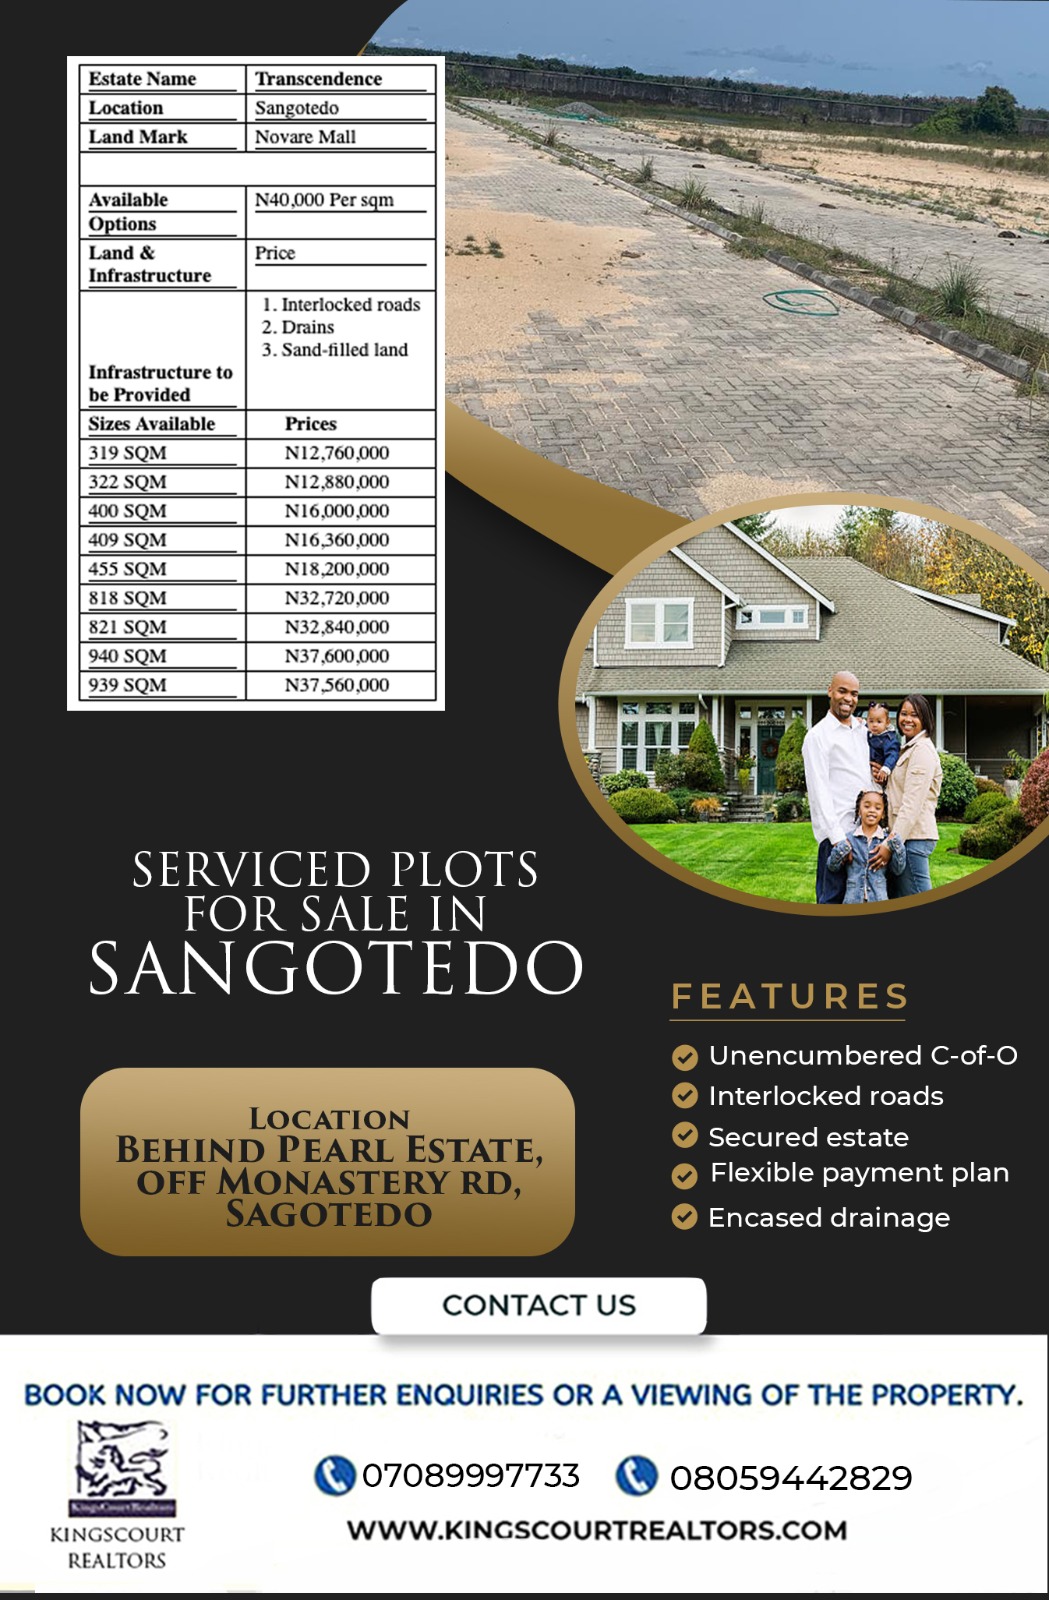 Serviced plots of land for sale in Sangotedo, Transcendence Estate